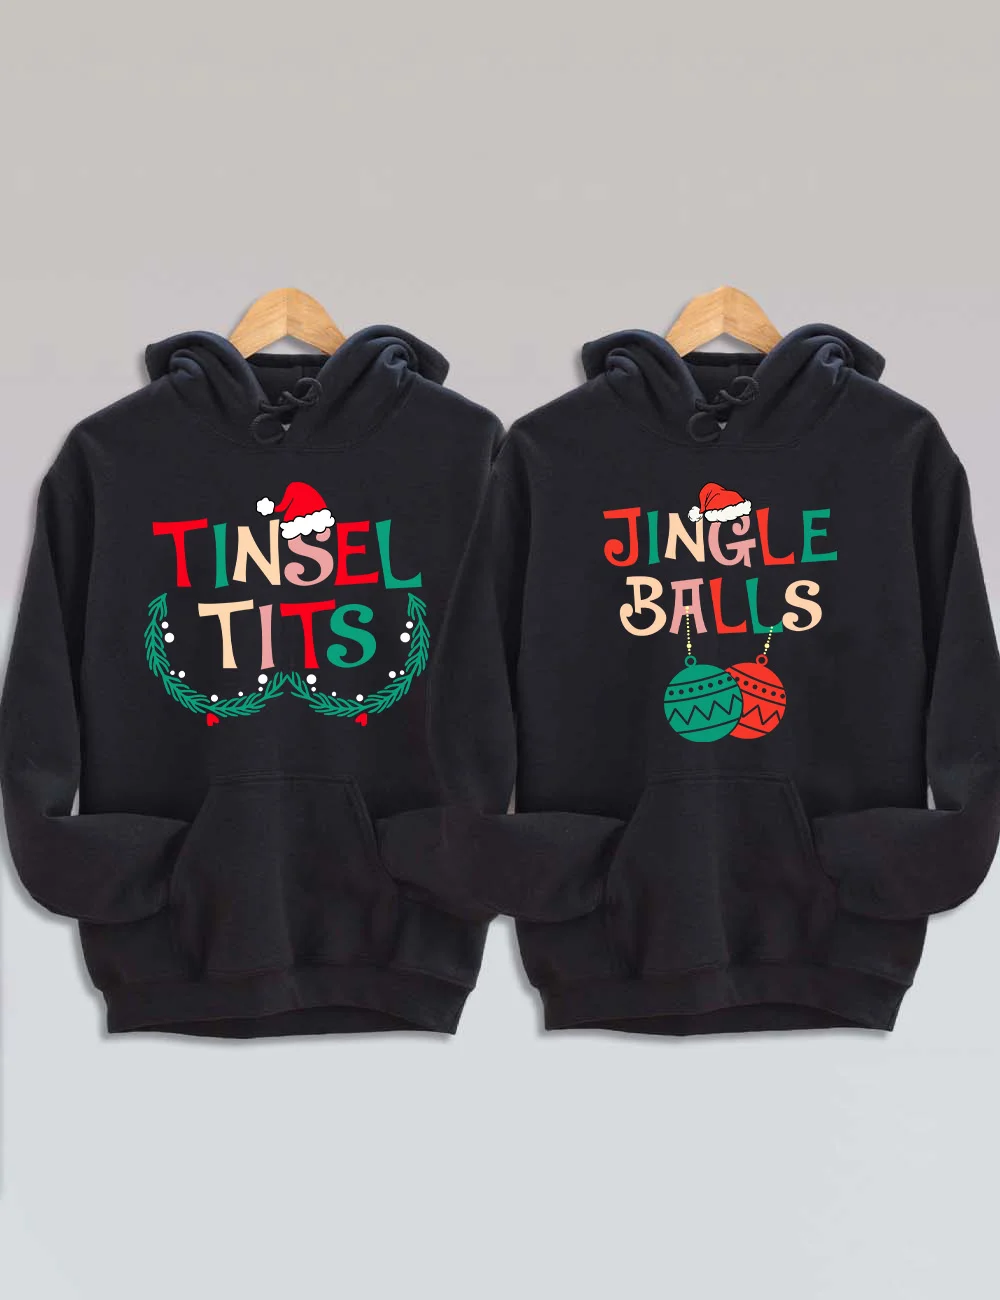 Tinsel Tits/Jingle Balls Christmas Hoodie